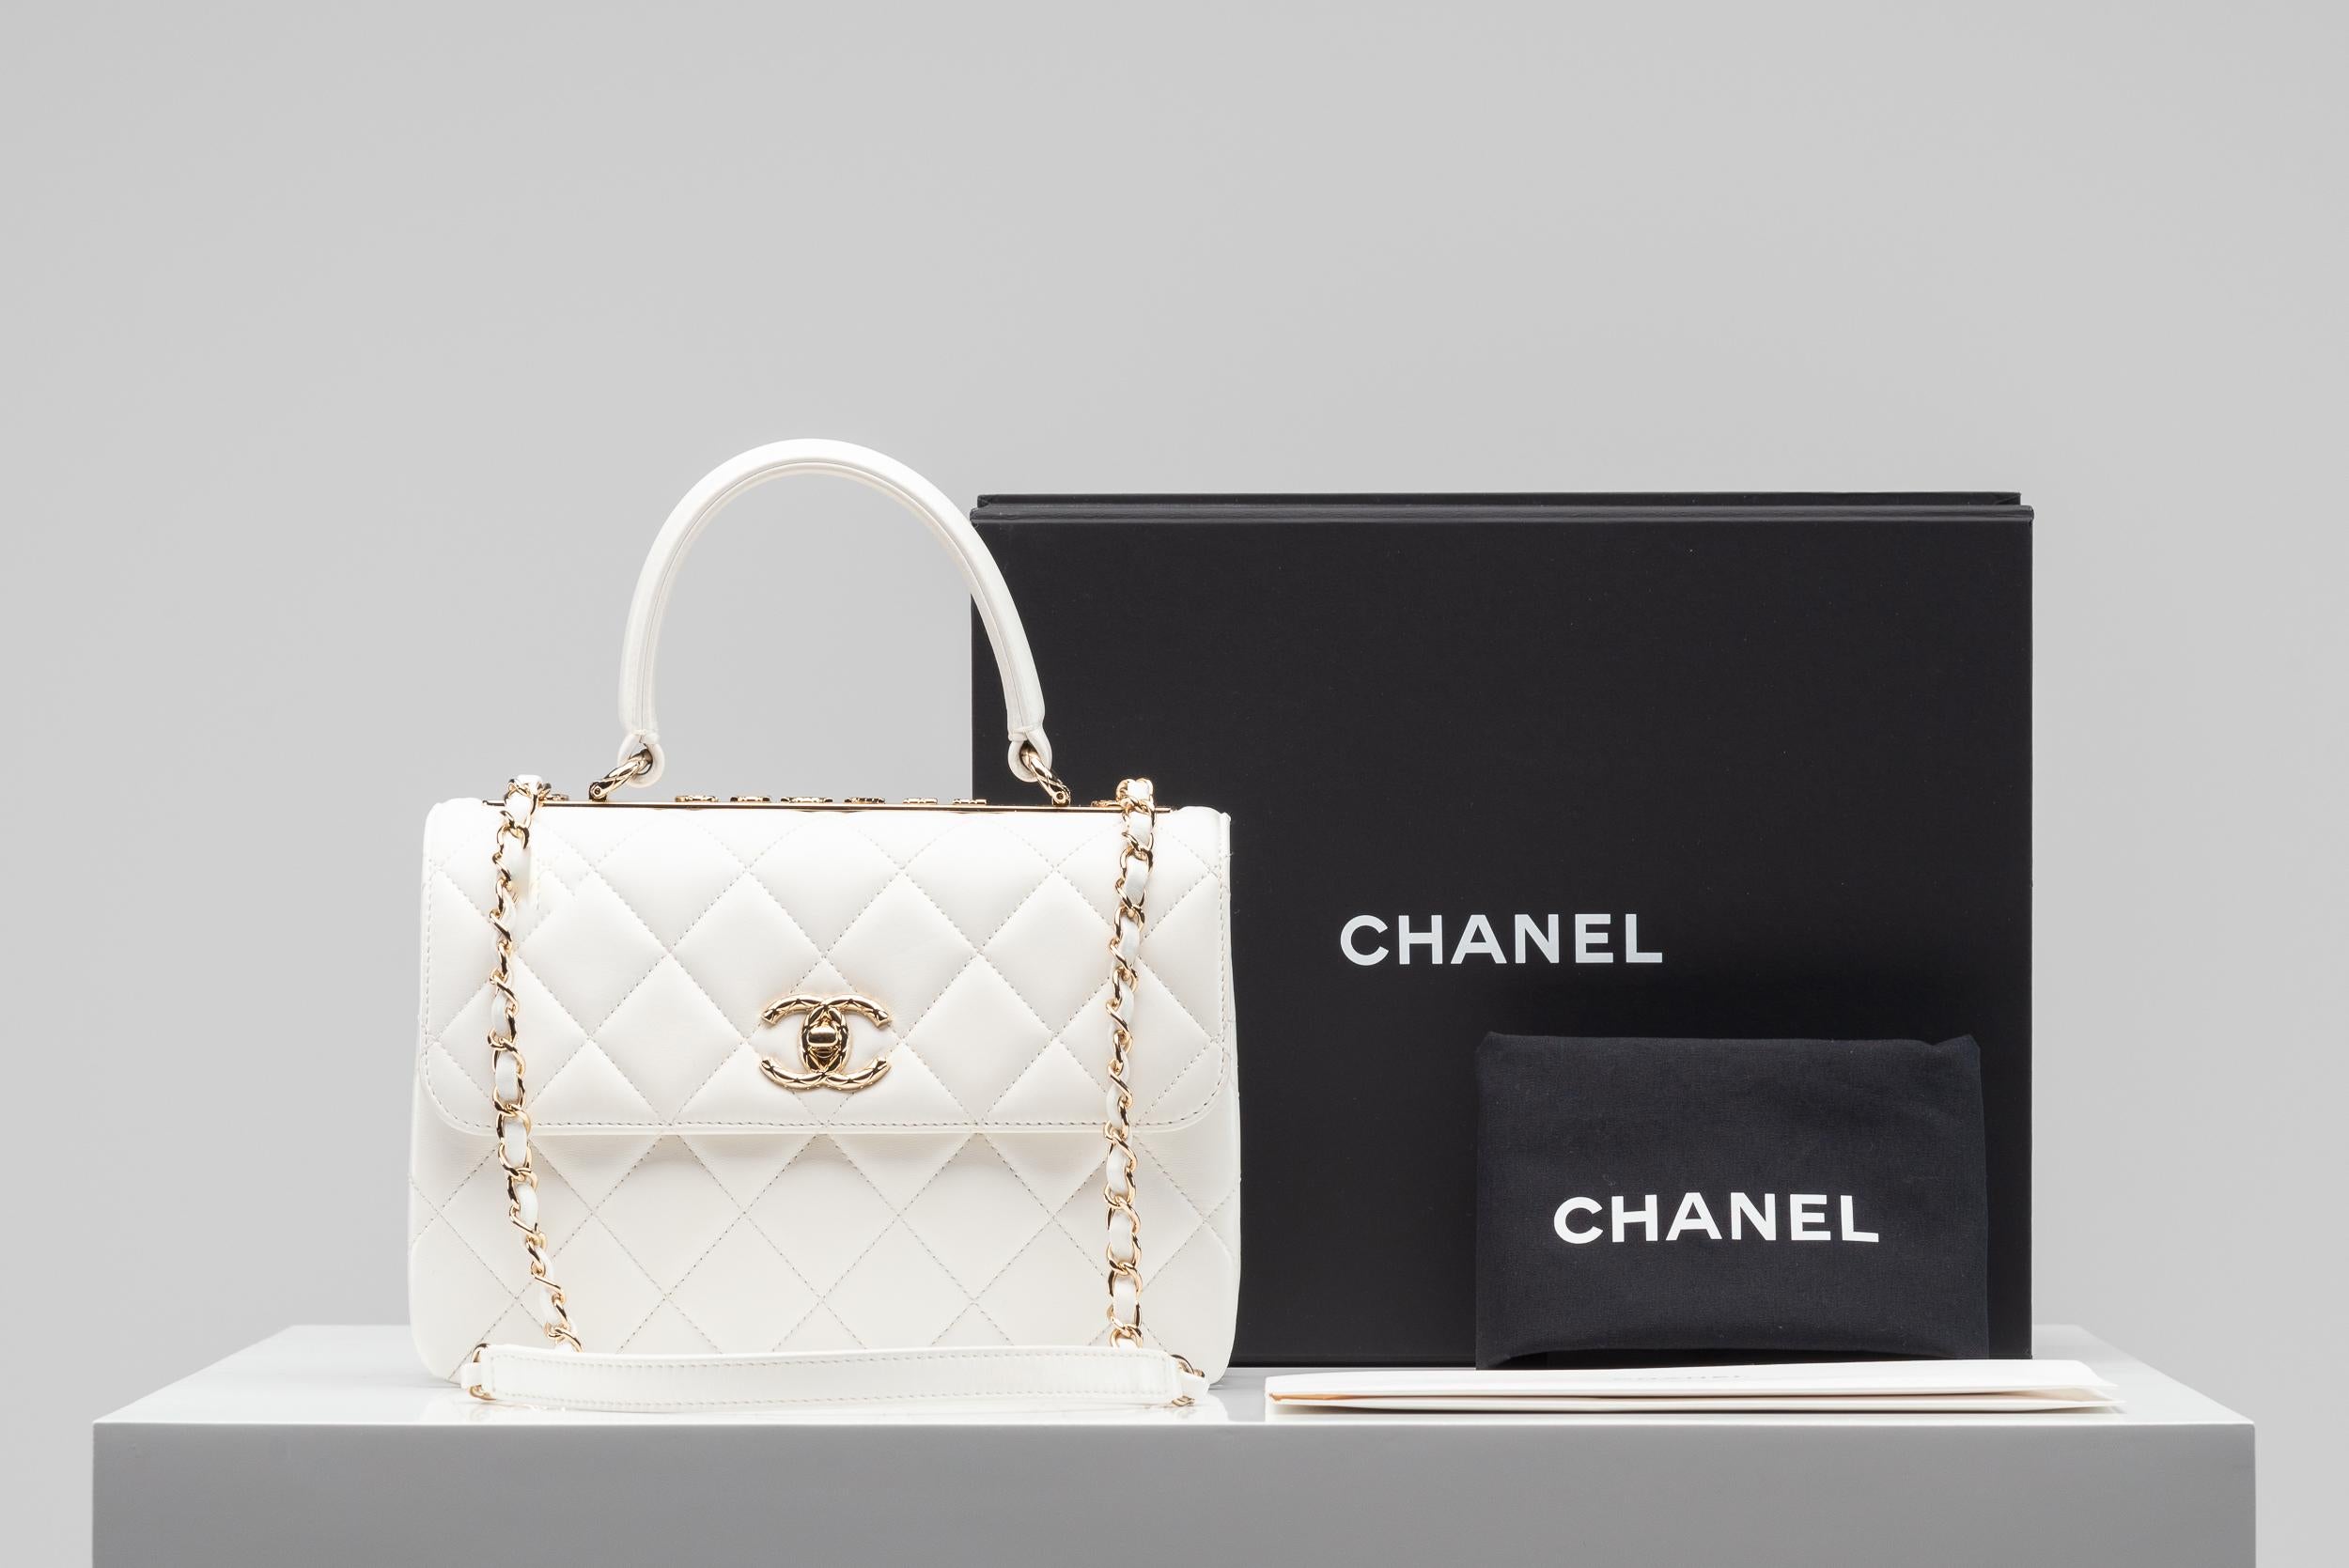 De la Collection SINETI nous vous proposons ce sac Chanel CC Trendy :
- Marque : Chanel
- Modèle : CC Trendy Bag
- Couleur : Whiting
- Année : 2022
- Condit : Excellent (n'a pratiquement jamais été utilisé)
- MATERIAL : cuir d'agneau, accessoires en